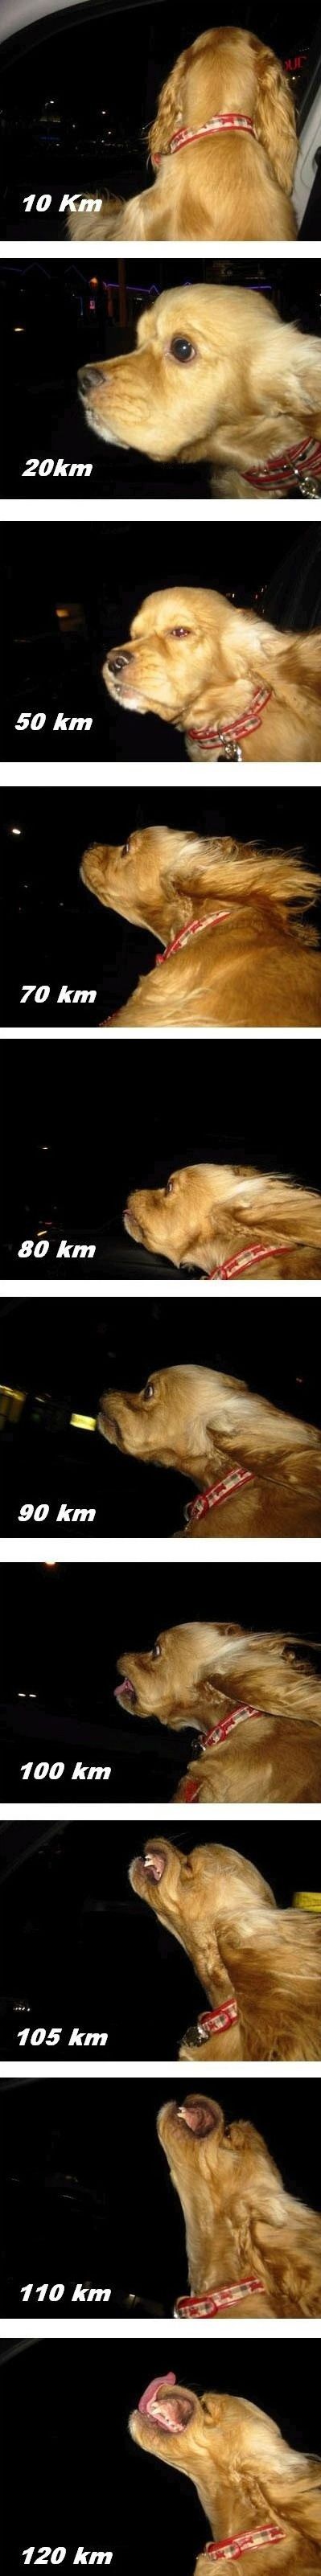 The dog speedometer.